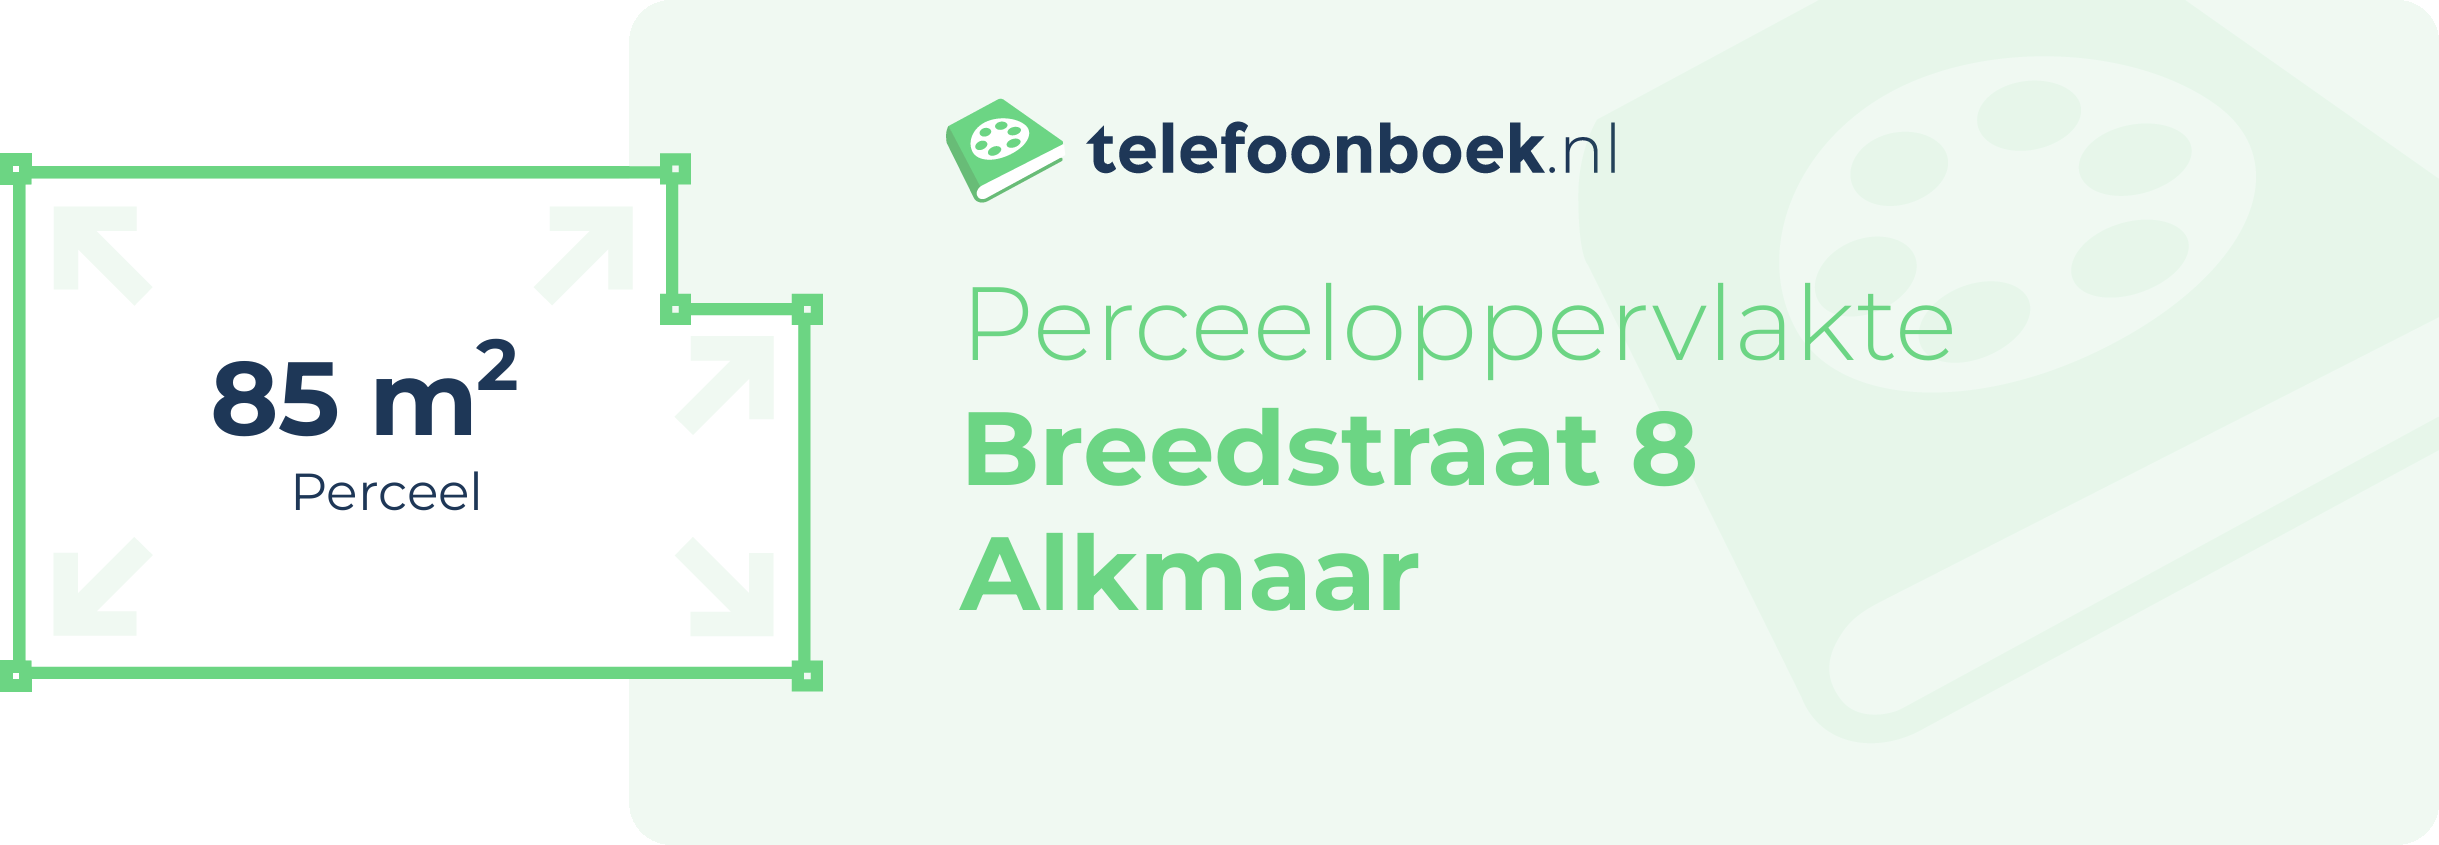 Perceeloppervlakte Breedstraat 8 Alkmaar